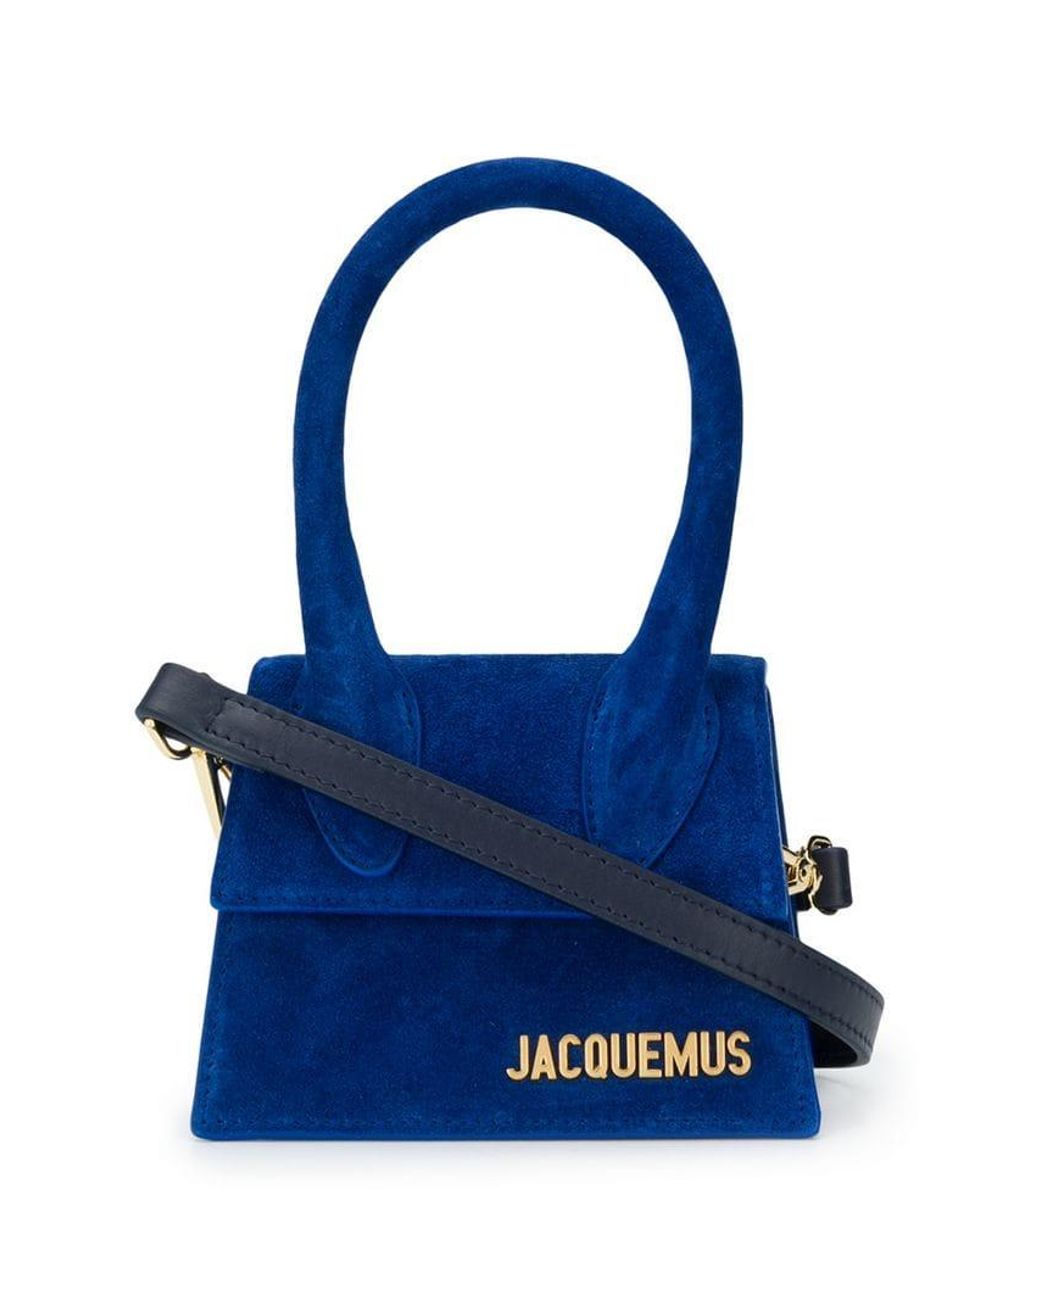 Jacquemus Le Chiquito Handbag In Blue Suede | Lyst Australia